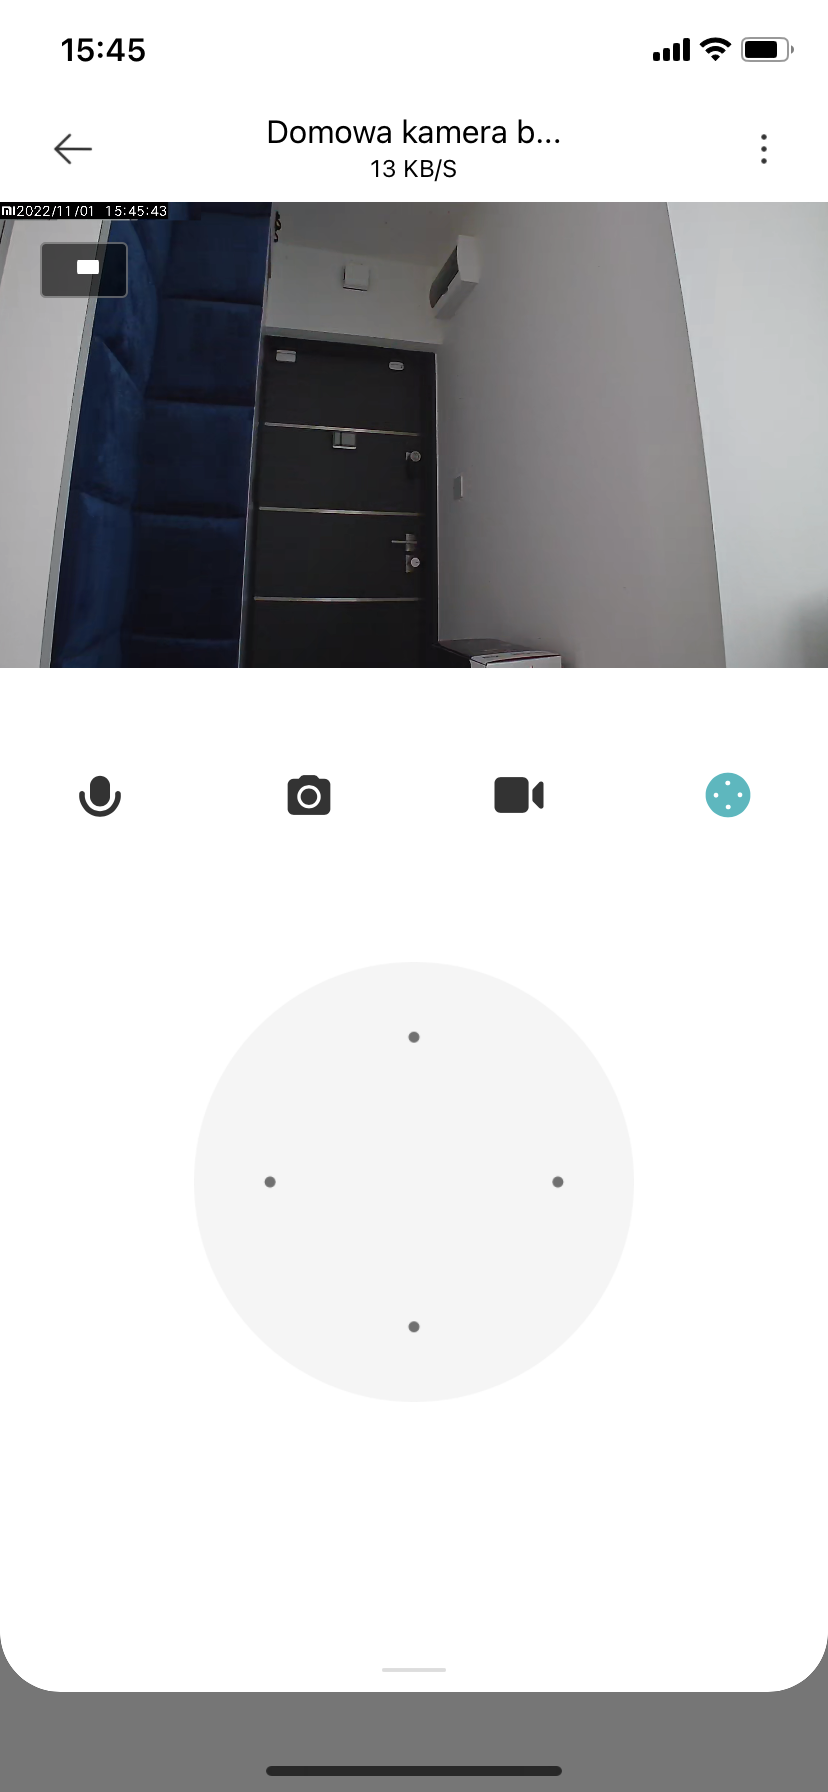 Recenzja Xiaomi Mi 360 Home Security Camera 2K Pro. Test kamery do domowego monitoringu